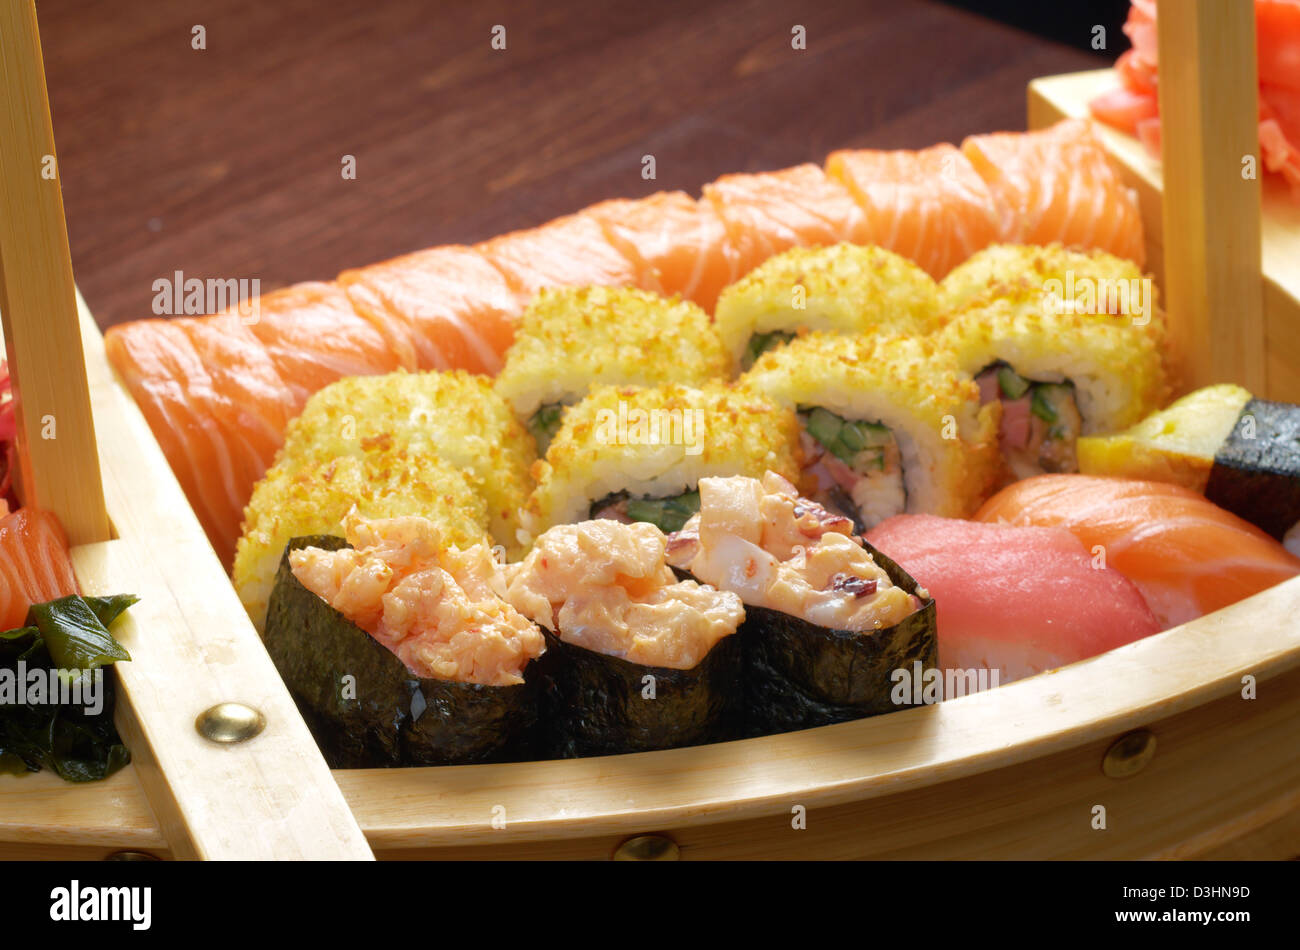 Un assortimento di sushi il cibo giapponese sulla nave tradizionale giapponese del cibo. Foto Stock